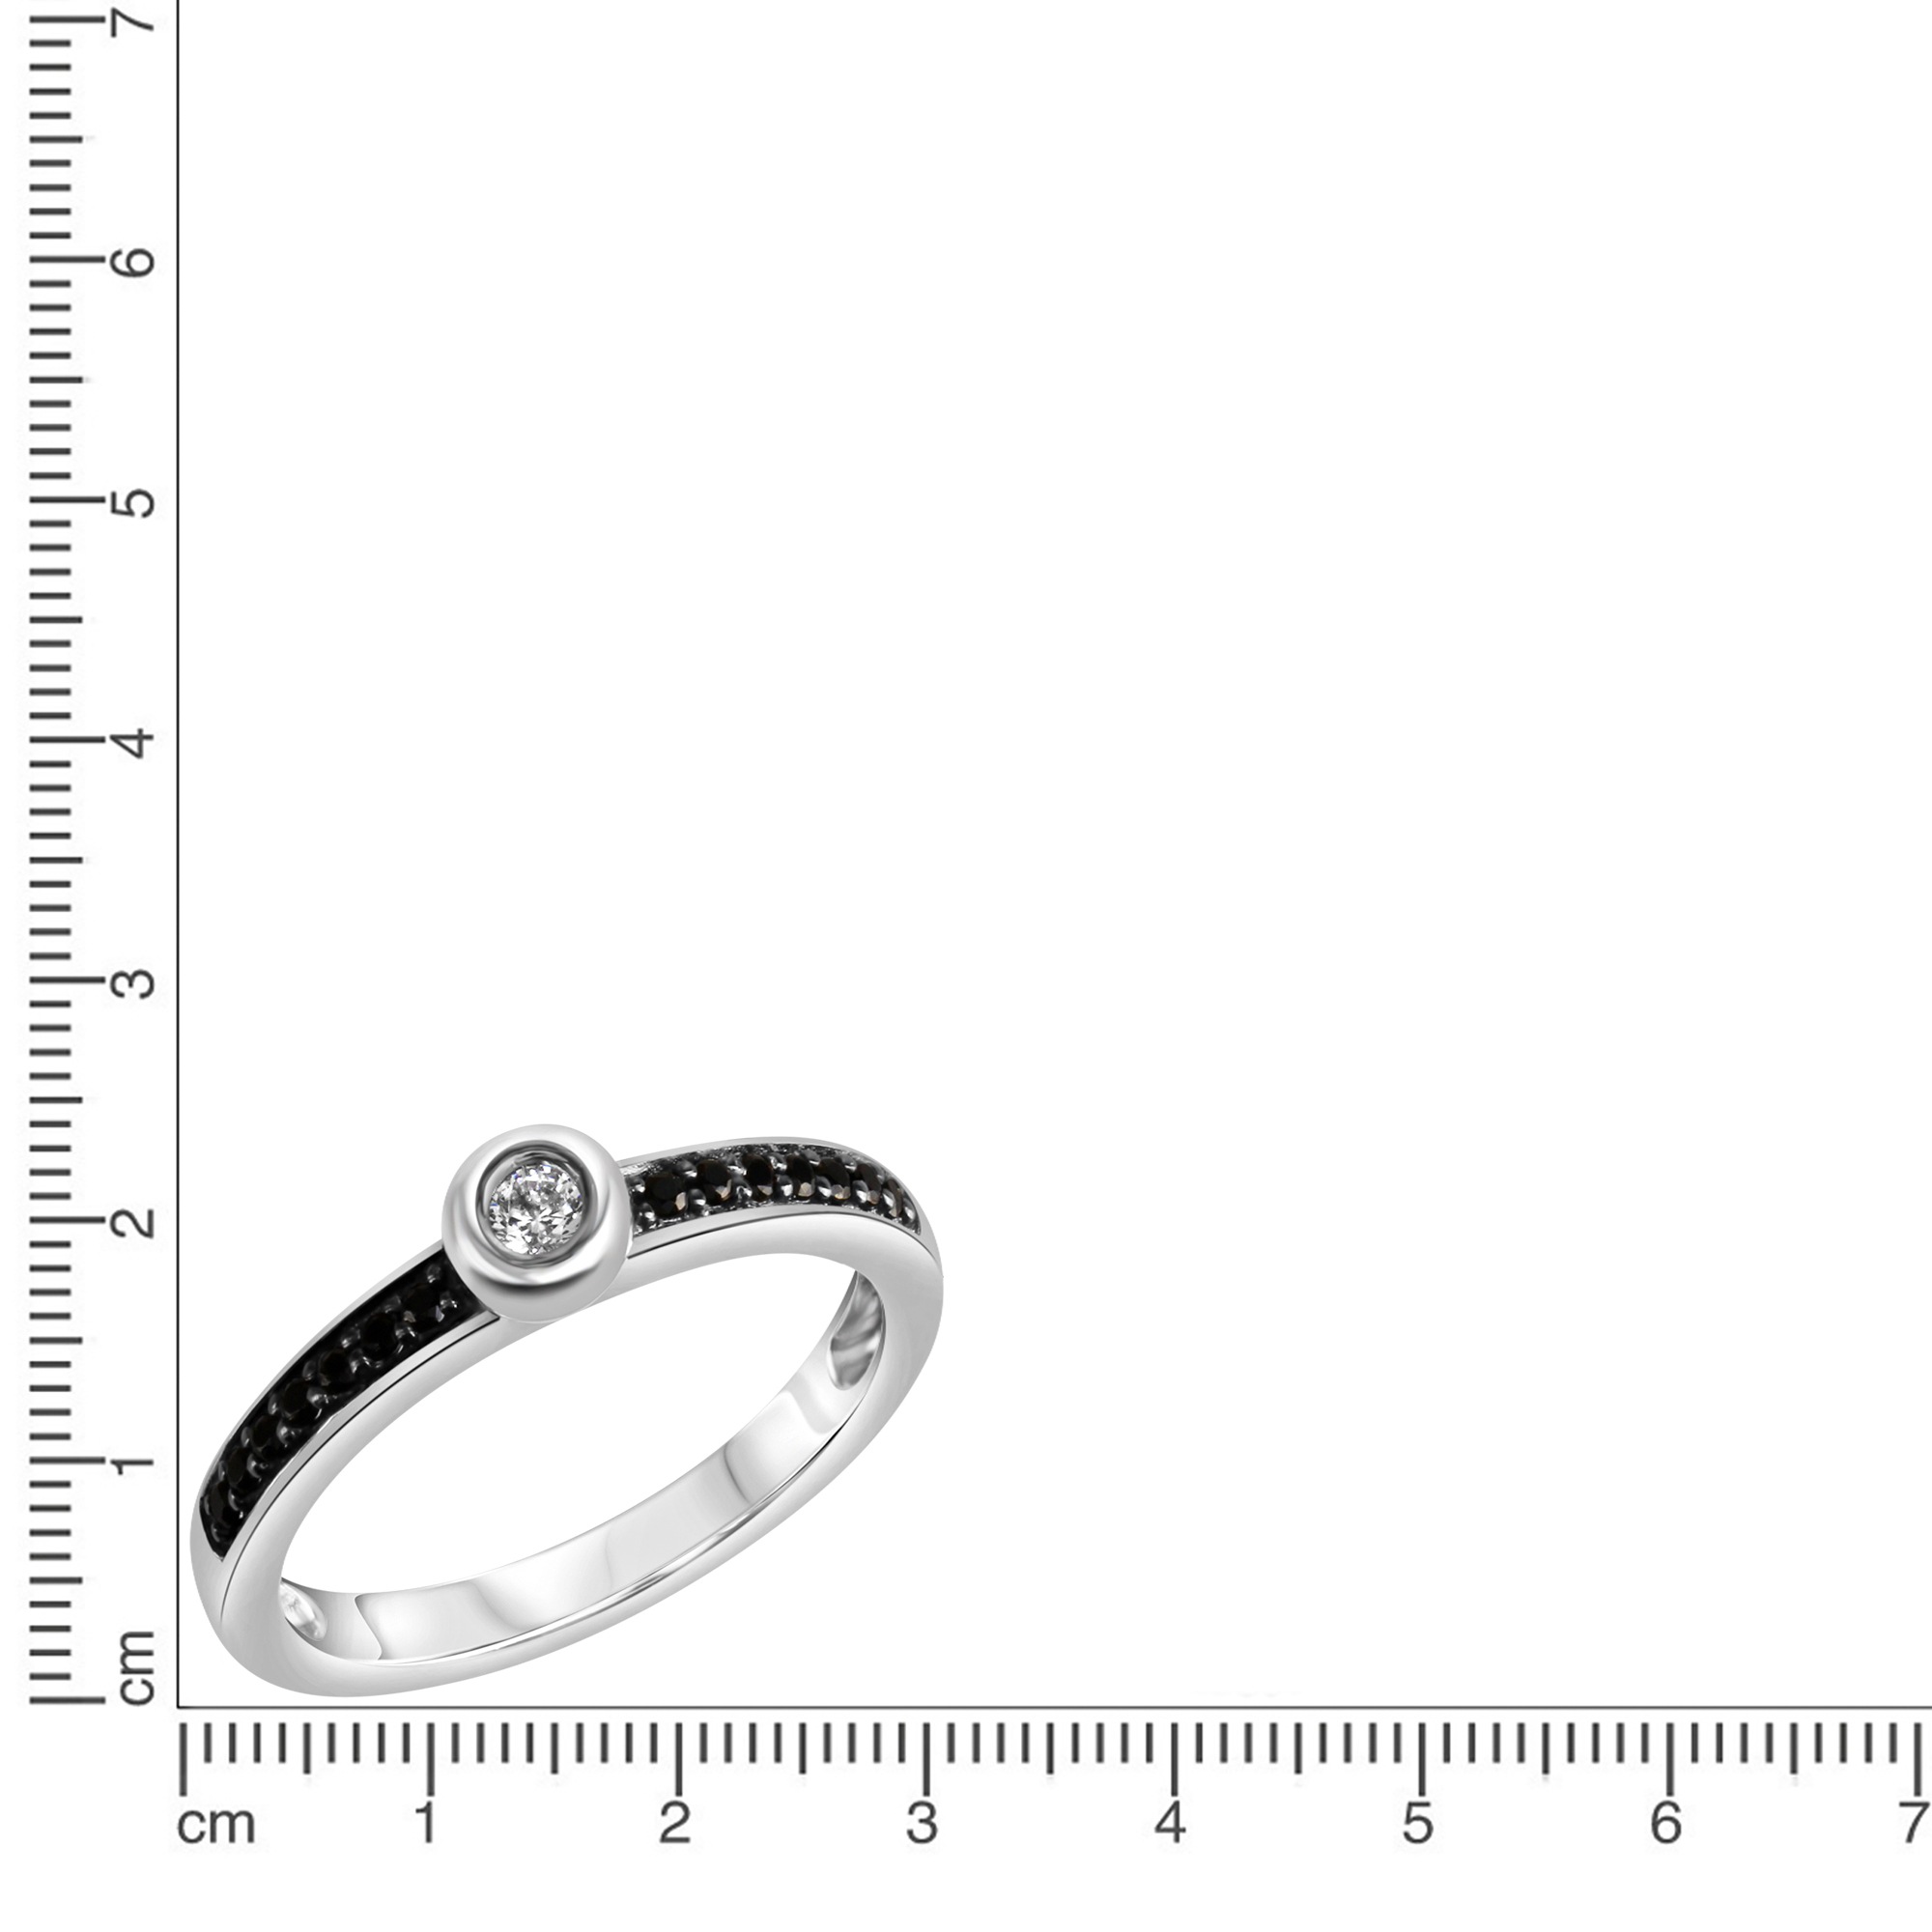 CELESTA Fingerring »925 Silber rhodiniert mit Zirkonia weiß und schwarz«